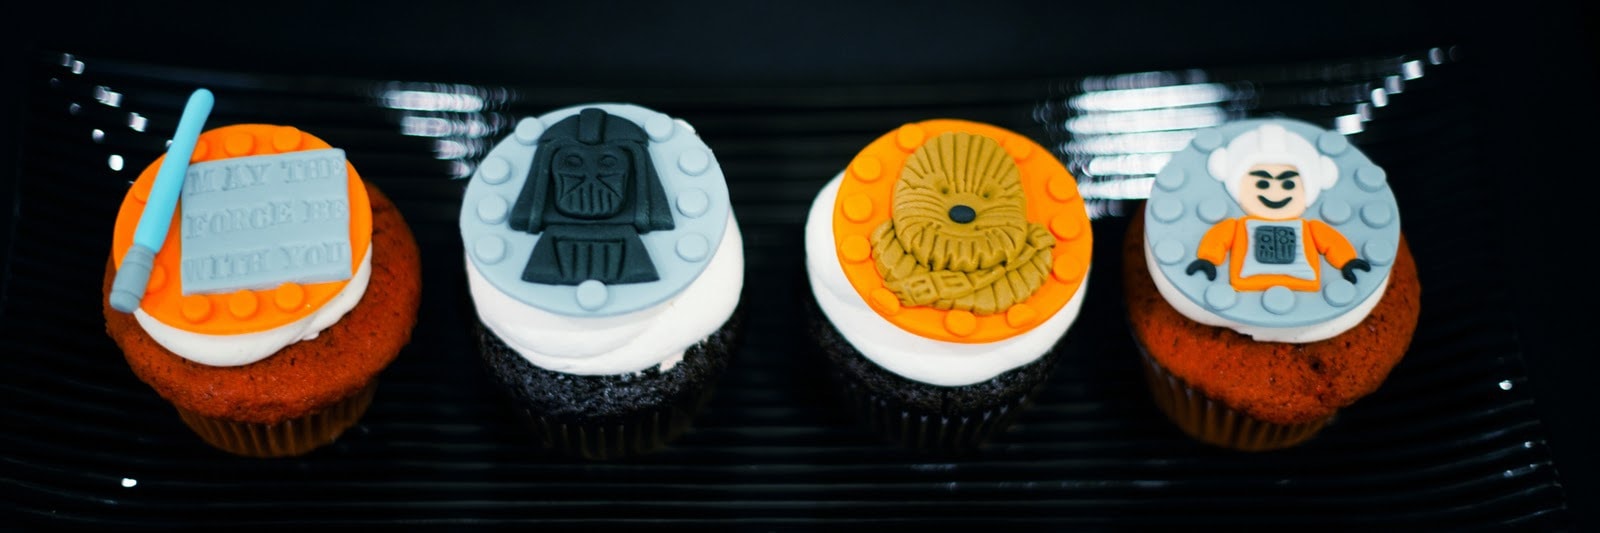 Star Wars LEGO birthday party ideas